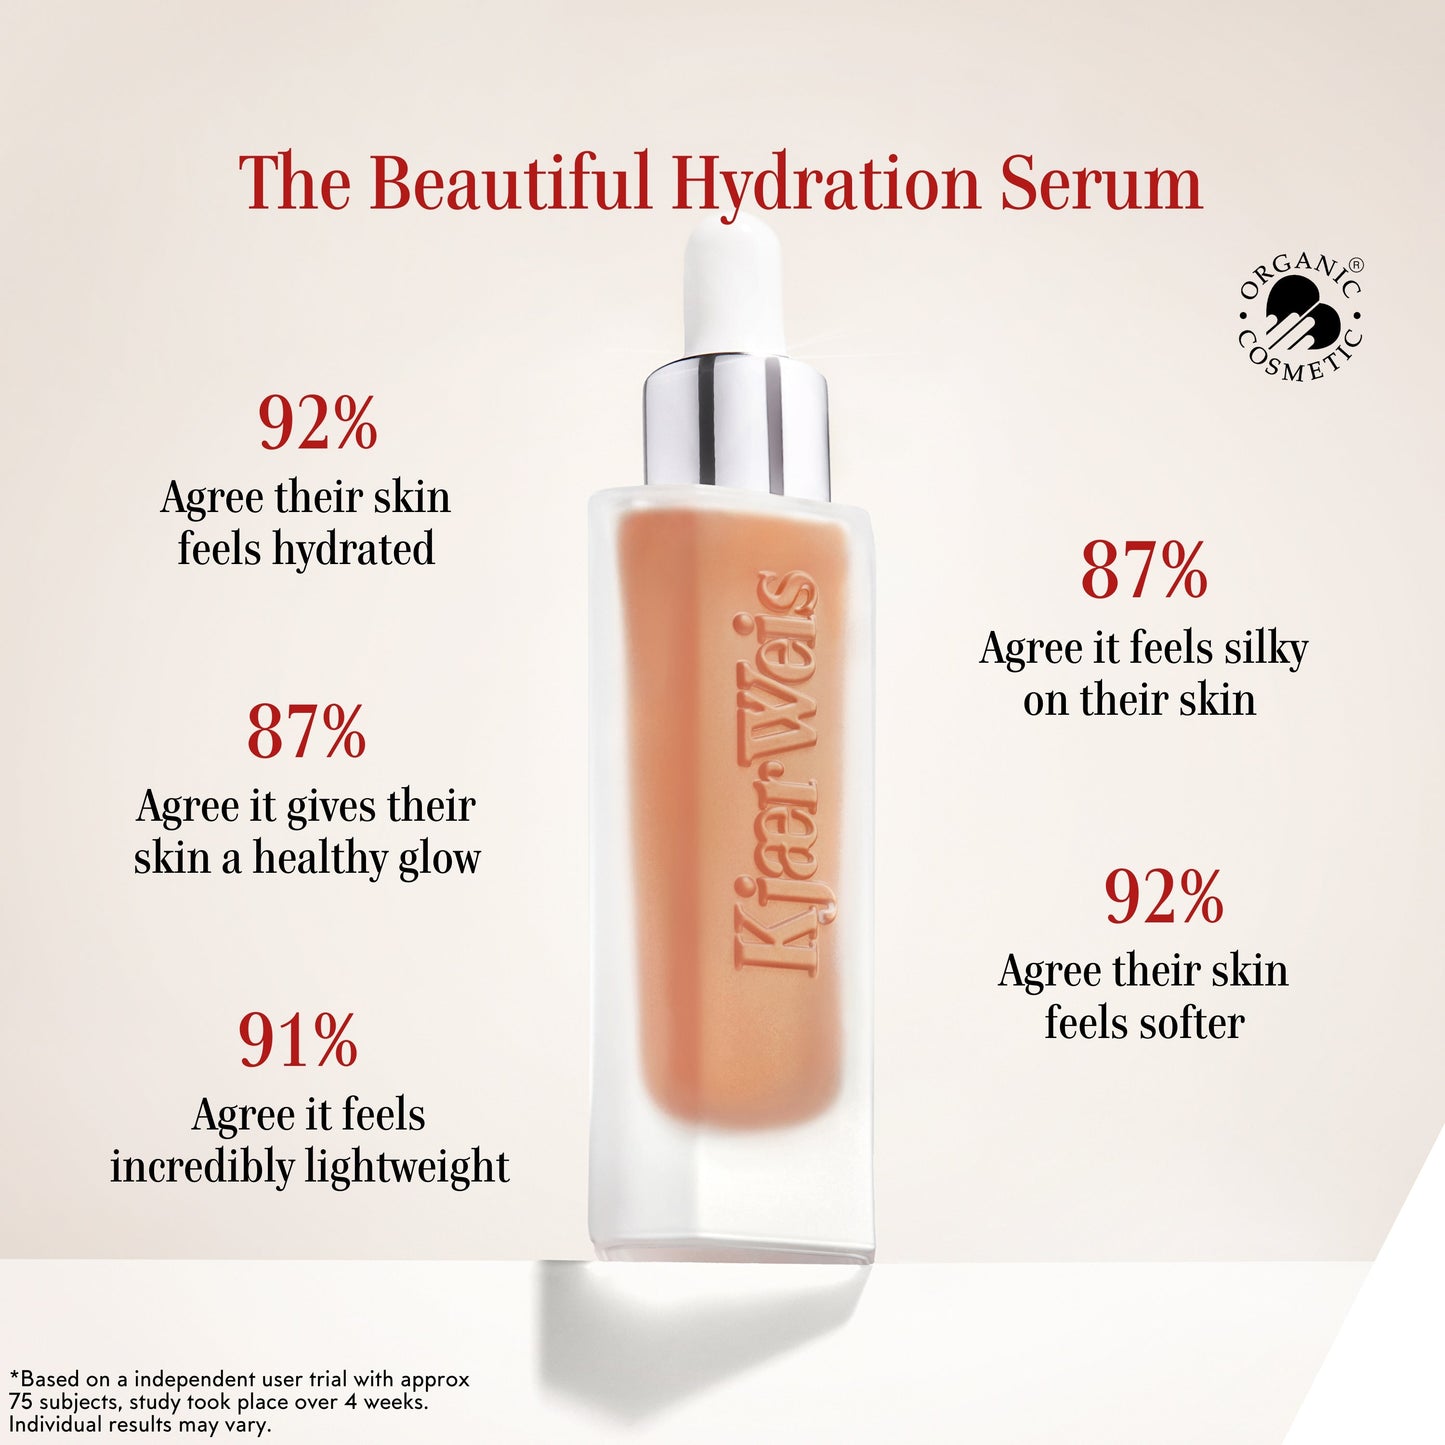 The Beautiful Hydration Serum